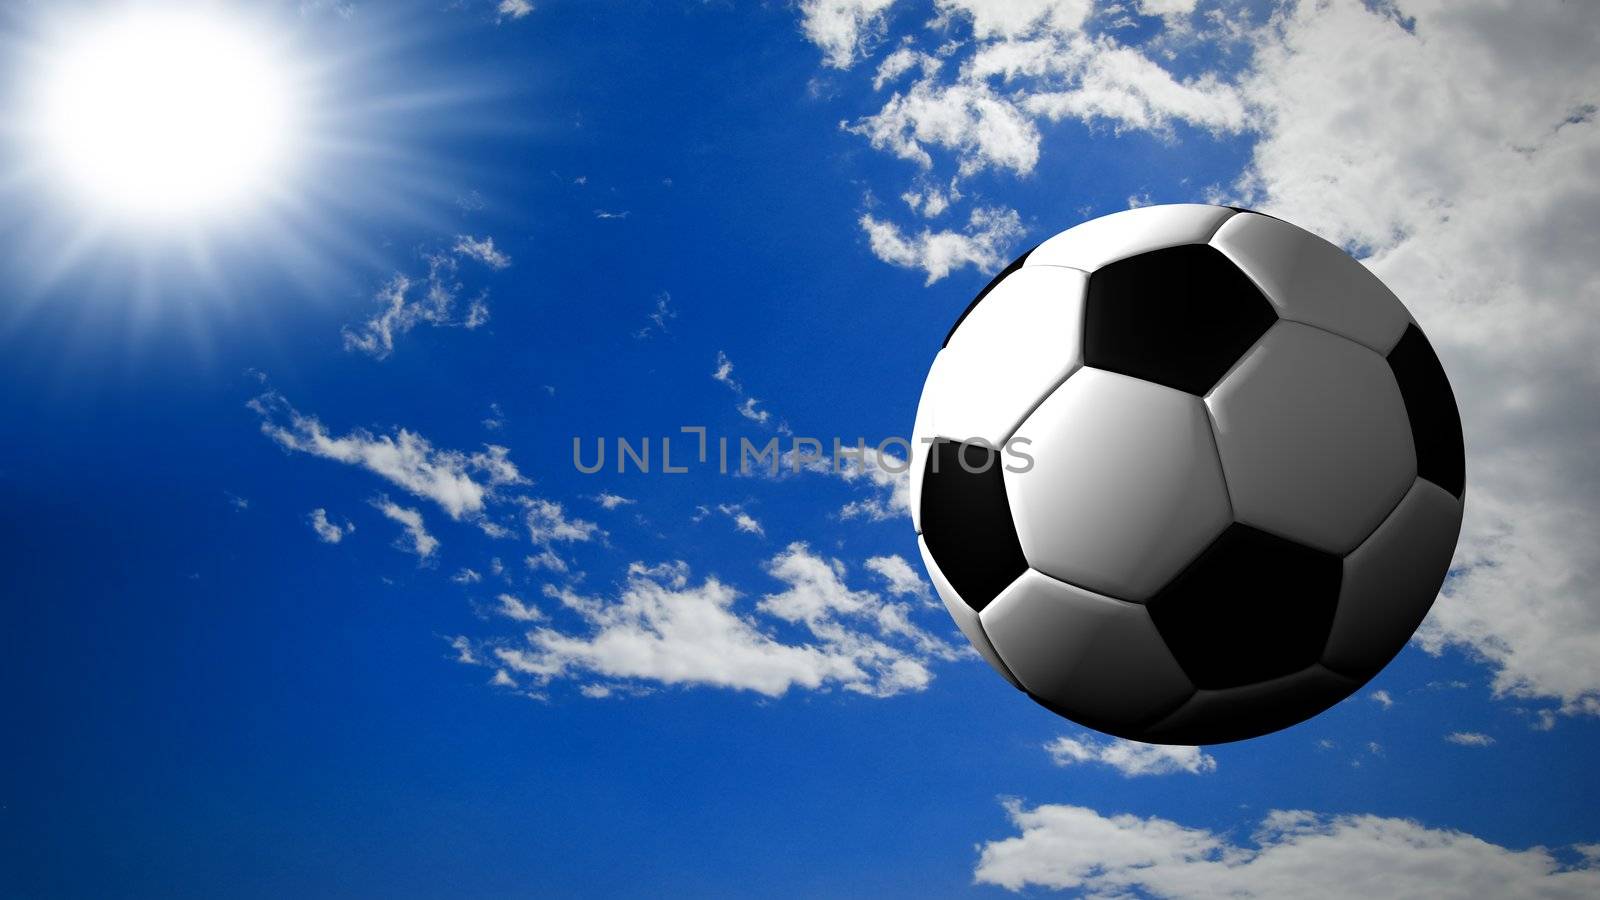 A soccer ball fly in a sunny sky